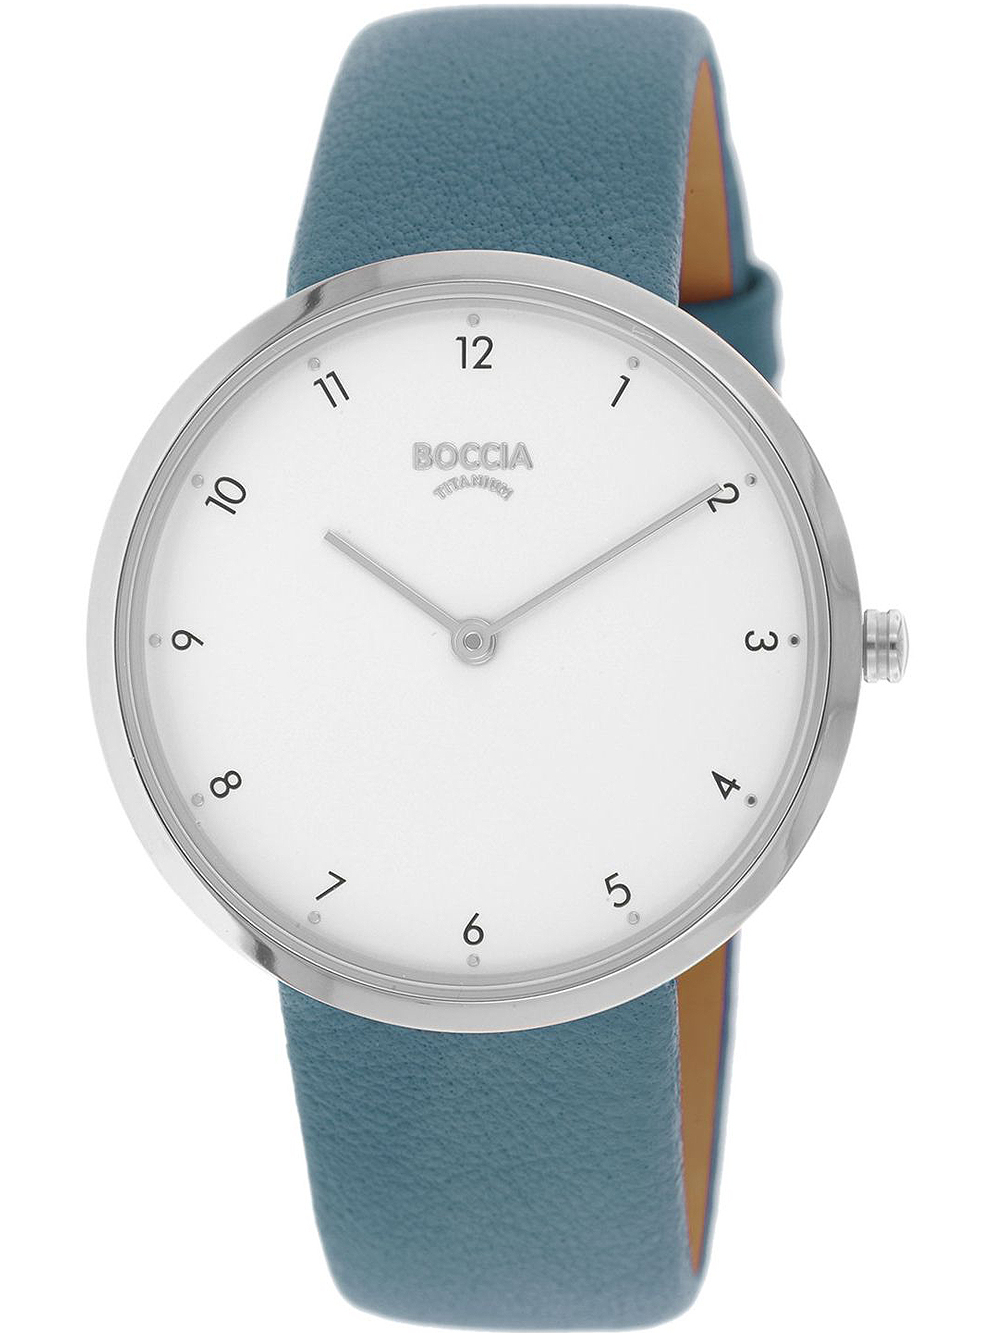 Dámské hodinky Boccia 3309-07 ladies watch titanium 36mm 3ATM